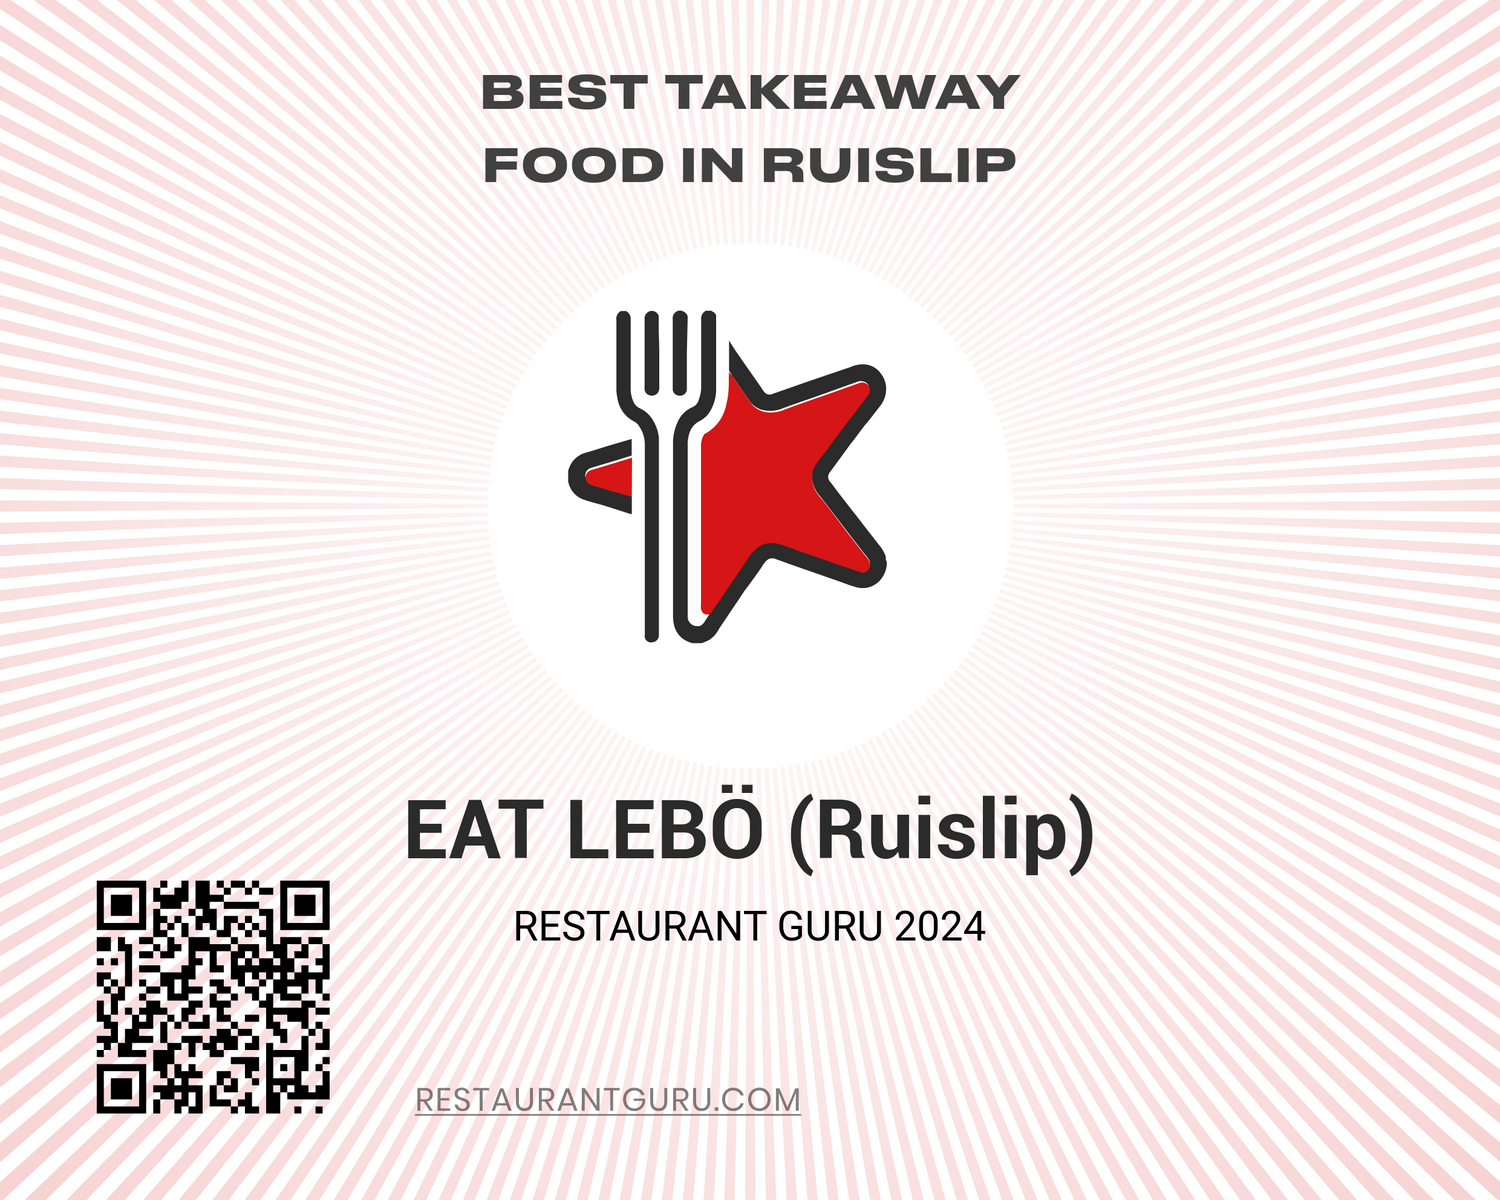 Certificate Award by Restaurant Guru for EAT LEBO Ruislip 2024